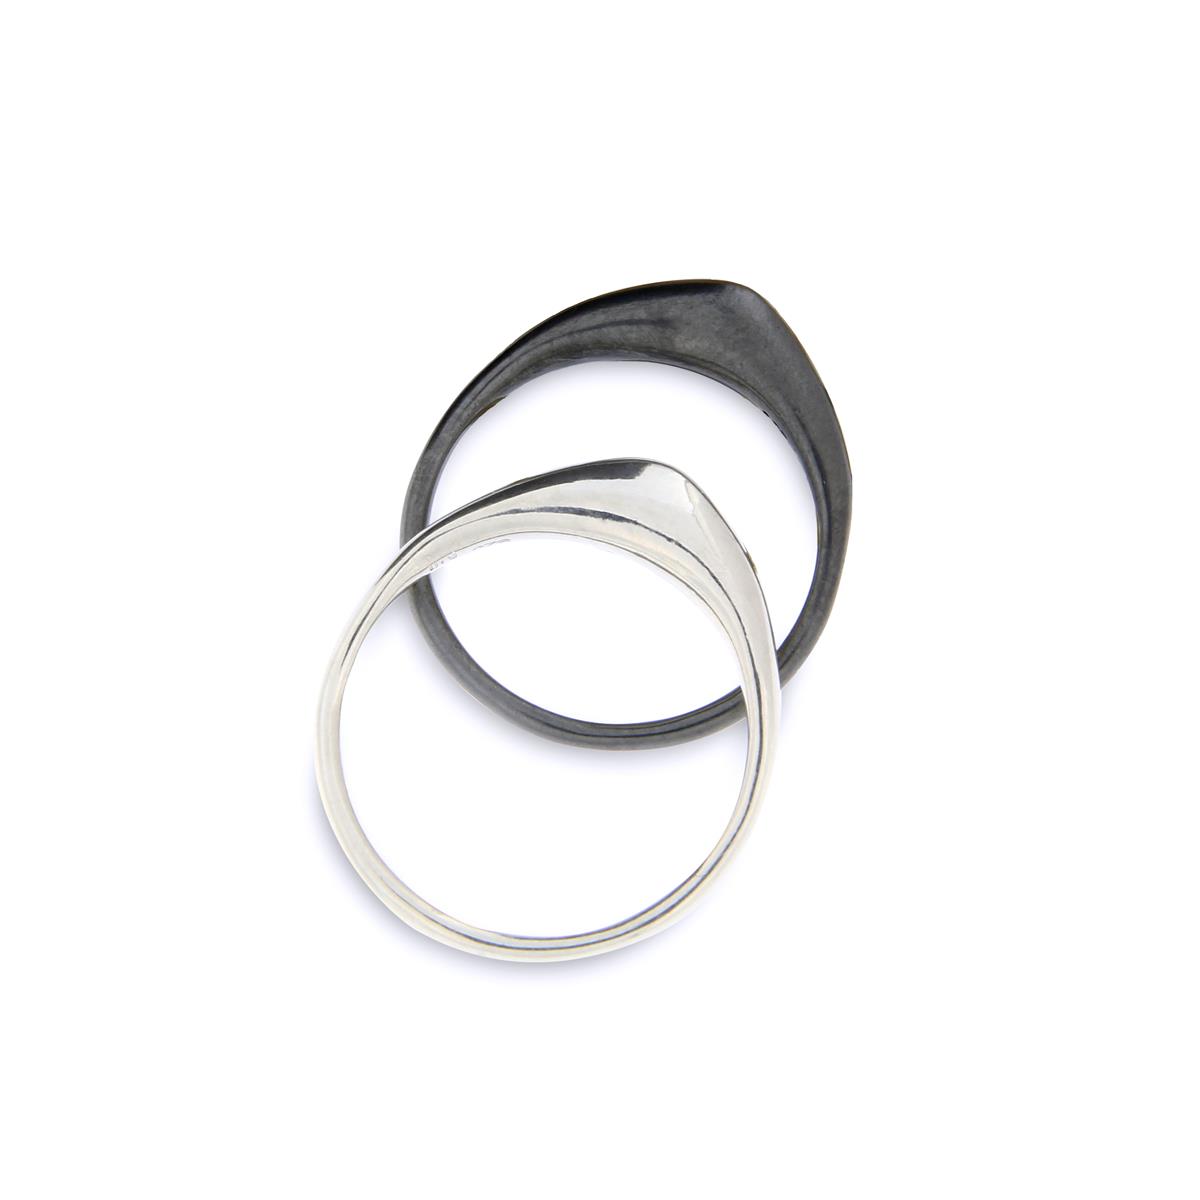 Katie g. Jewellery - Cutting Edge Ring - Wave - Sterling silber poliert und oxidiert - 130€